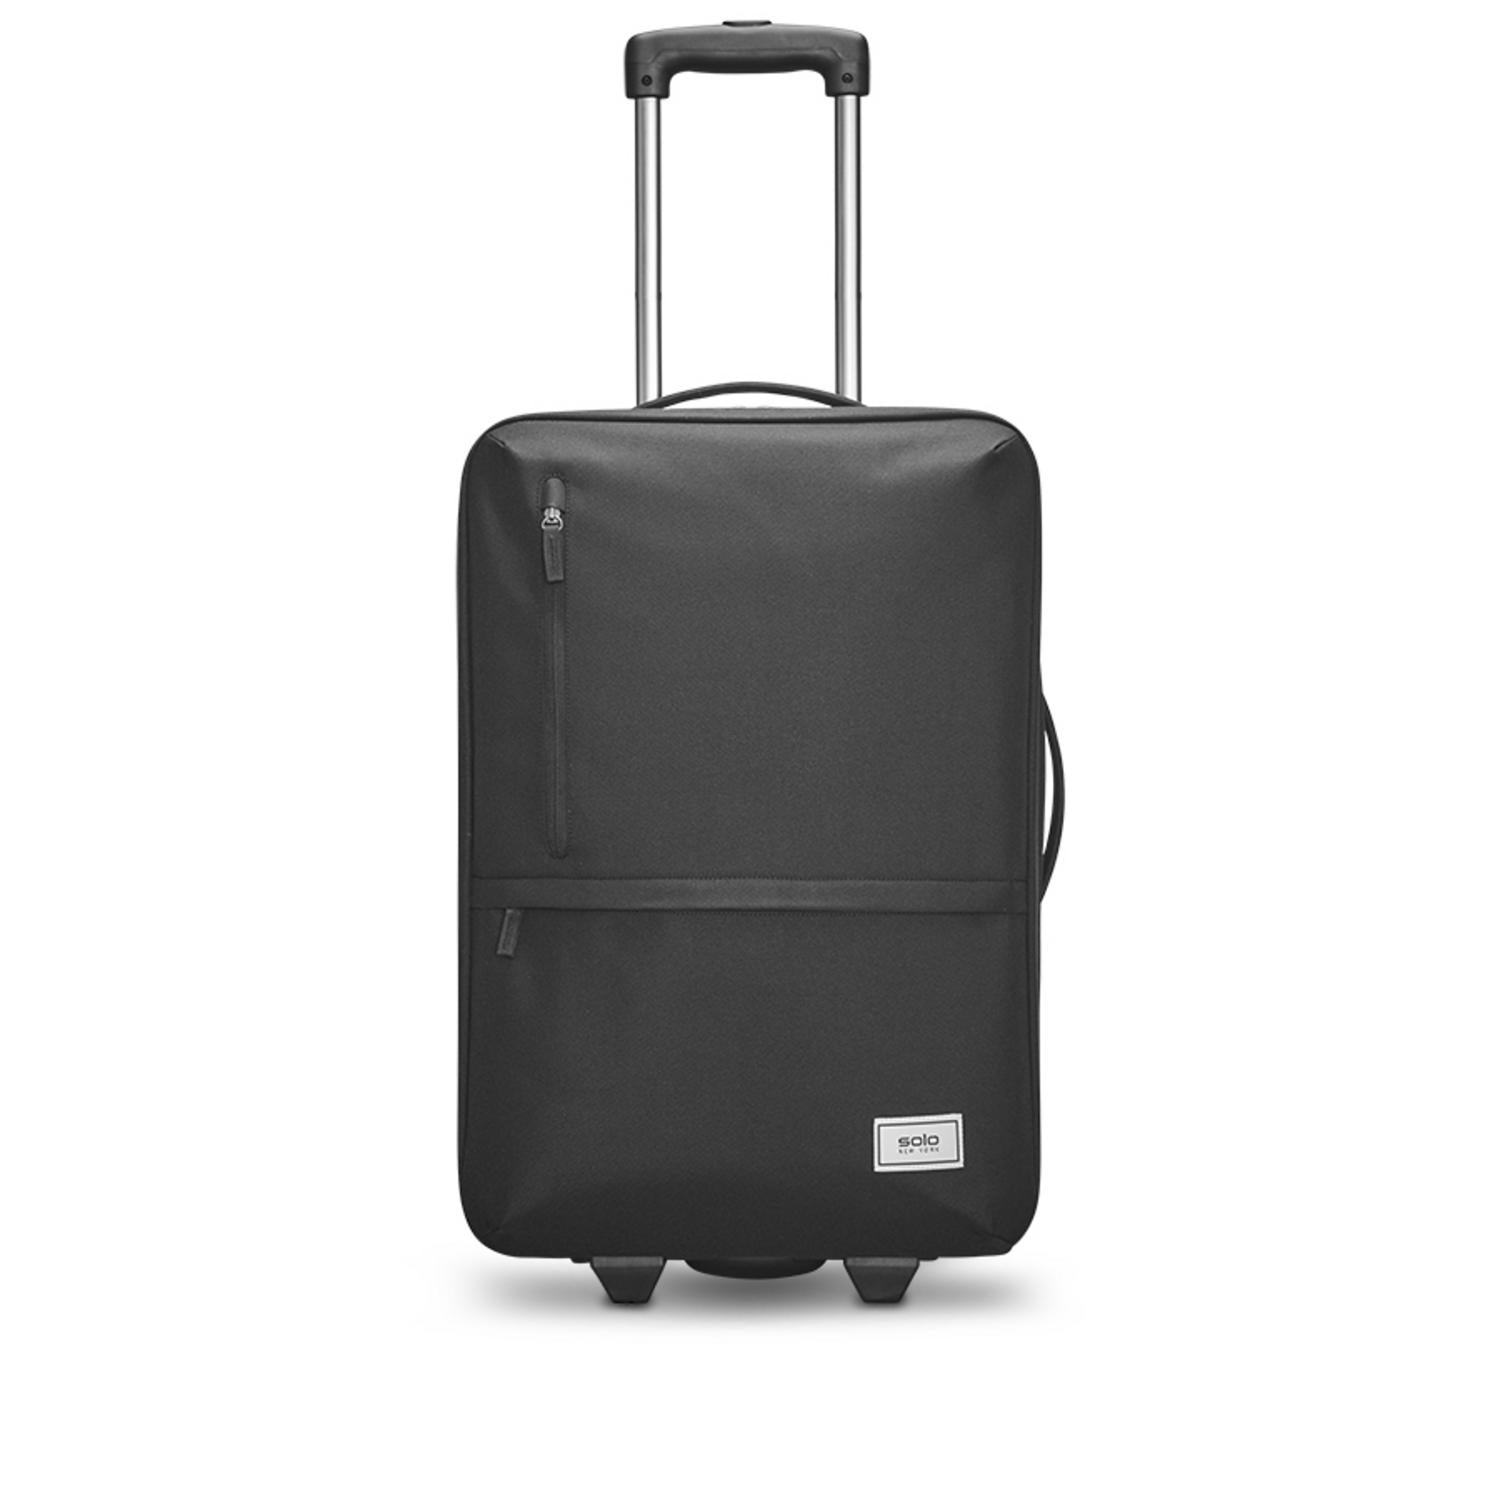 Travel Bag के ये हैं 5 बेहतरीन विकल्प, मात्र ₹599 से शुरू हो रही है इनकी  कीमत - wheel travel bags starting from just rupees 599 on amazon -  Navbharat Times